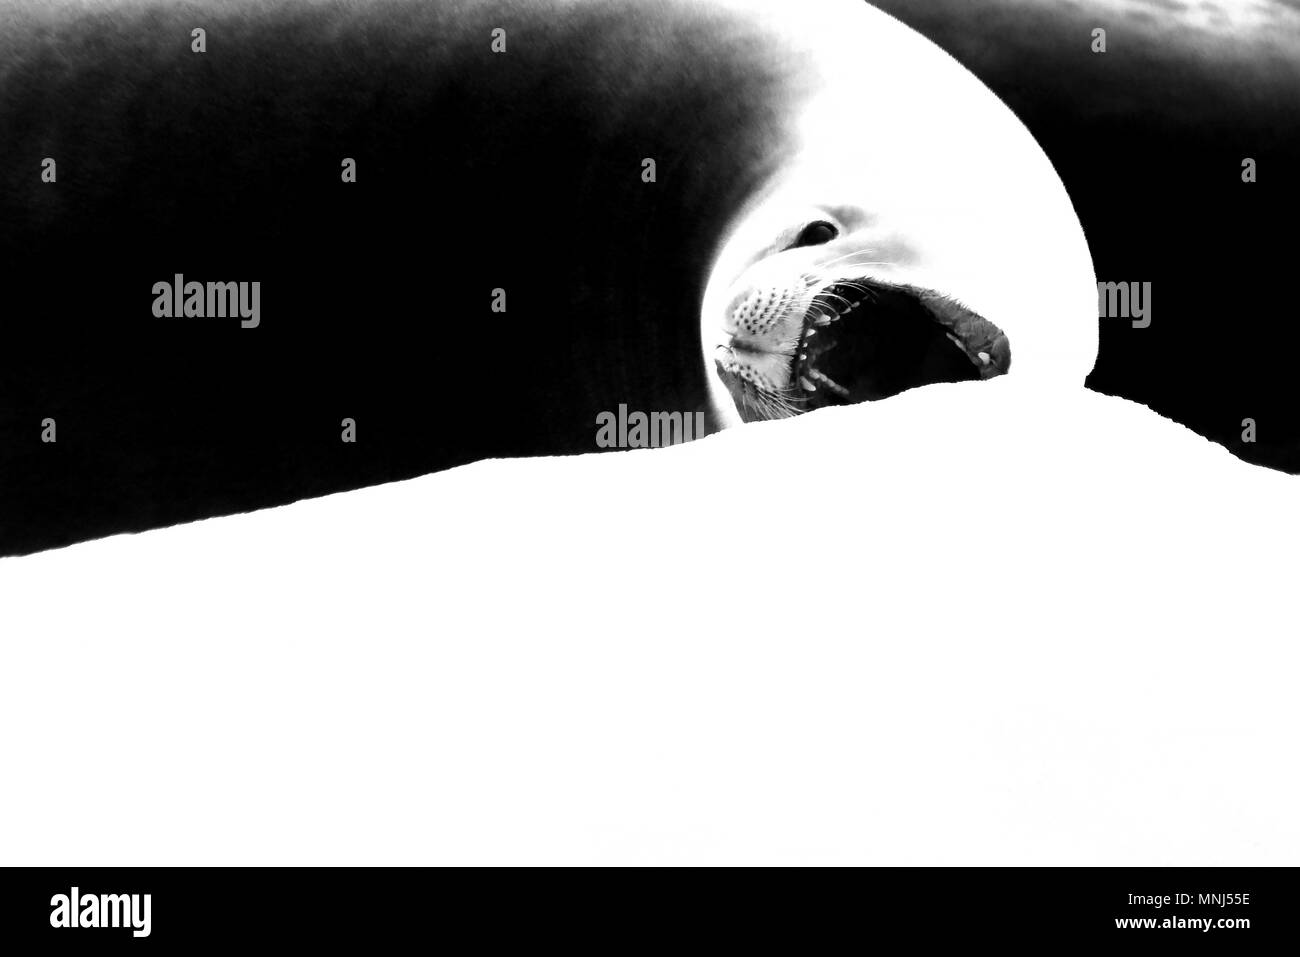 Dichtung mit offenen Mund auf Eisscholle, schwarz-weiße Grafik entworfen, Bild, Antarktische Halbinsel Stockfoto